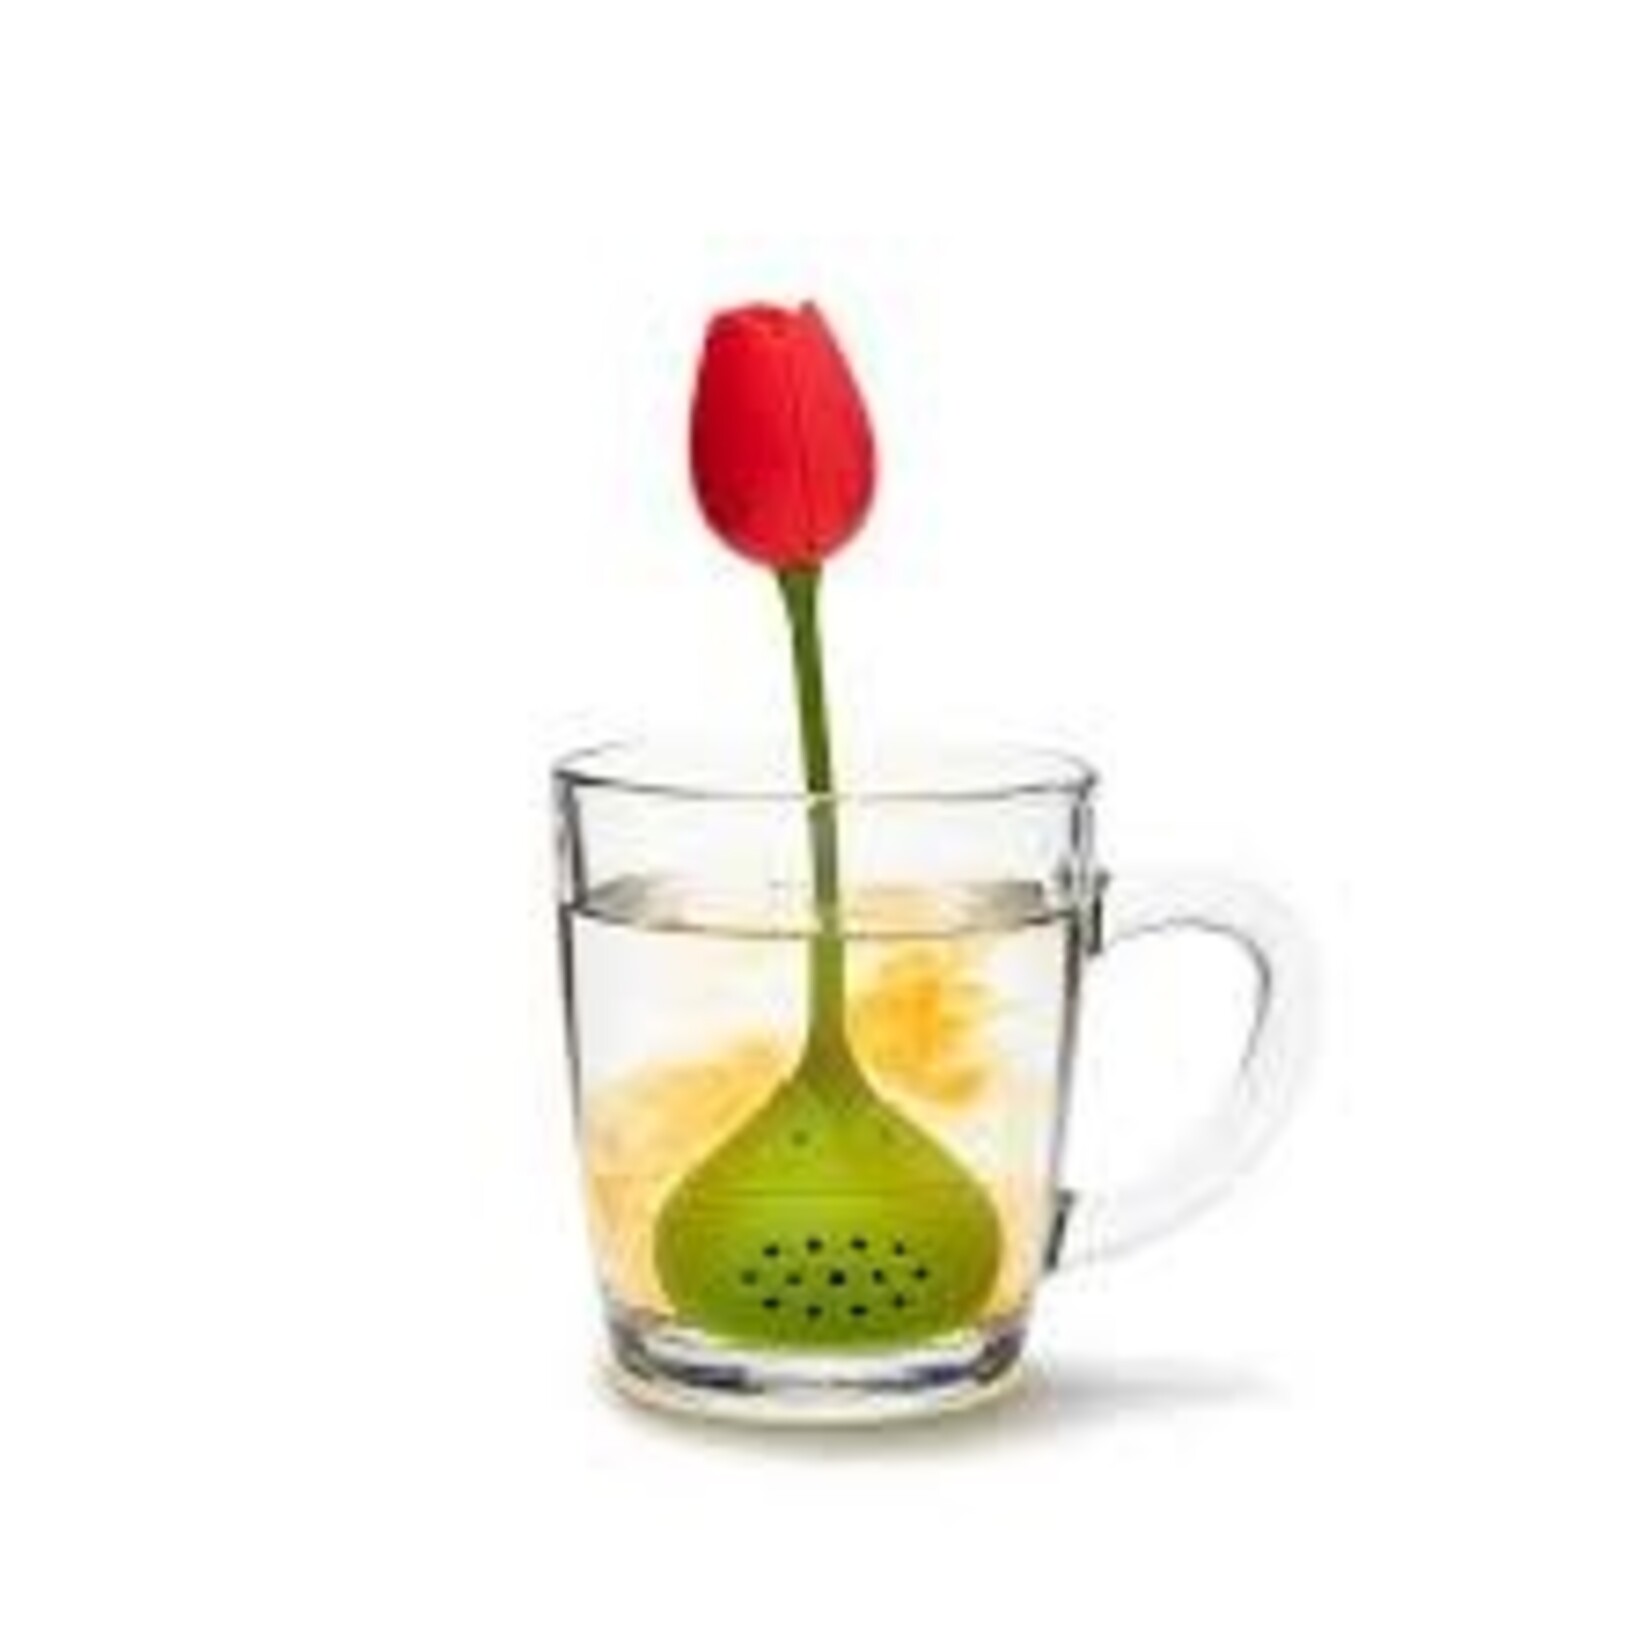 Diverse Merken rode tulp thee ei Ototo tulip tea infuser red tulp model Ototo Ot899